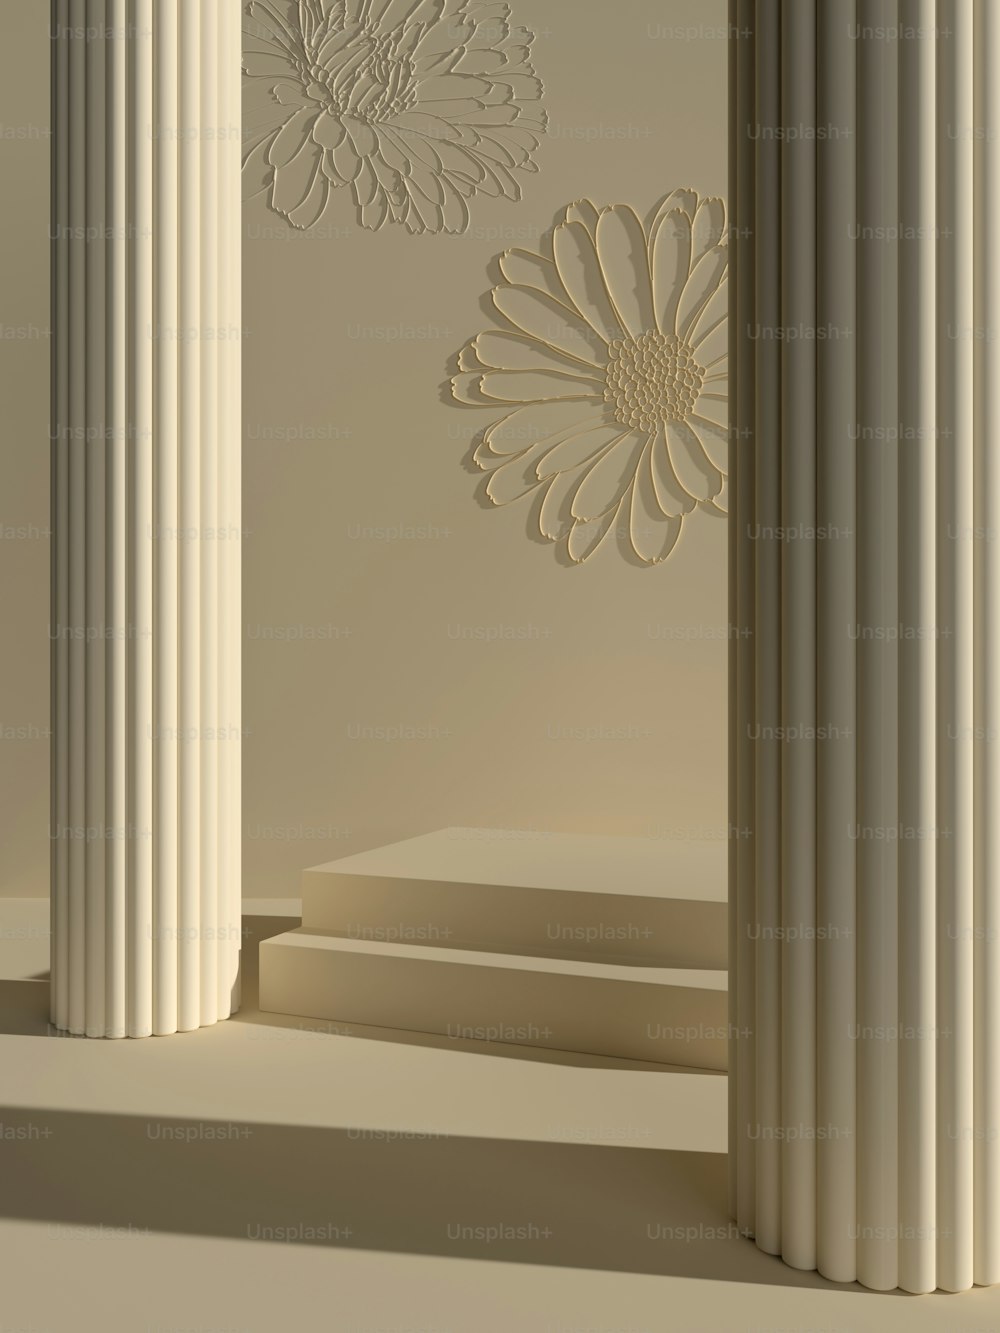 Un gruppo di pilastri bianchi con un fiore sul muro